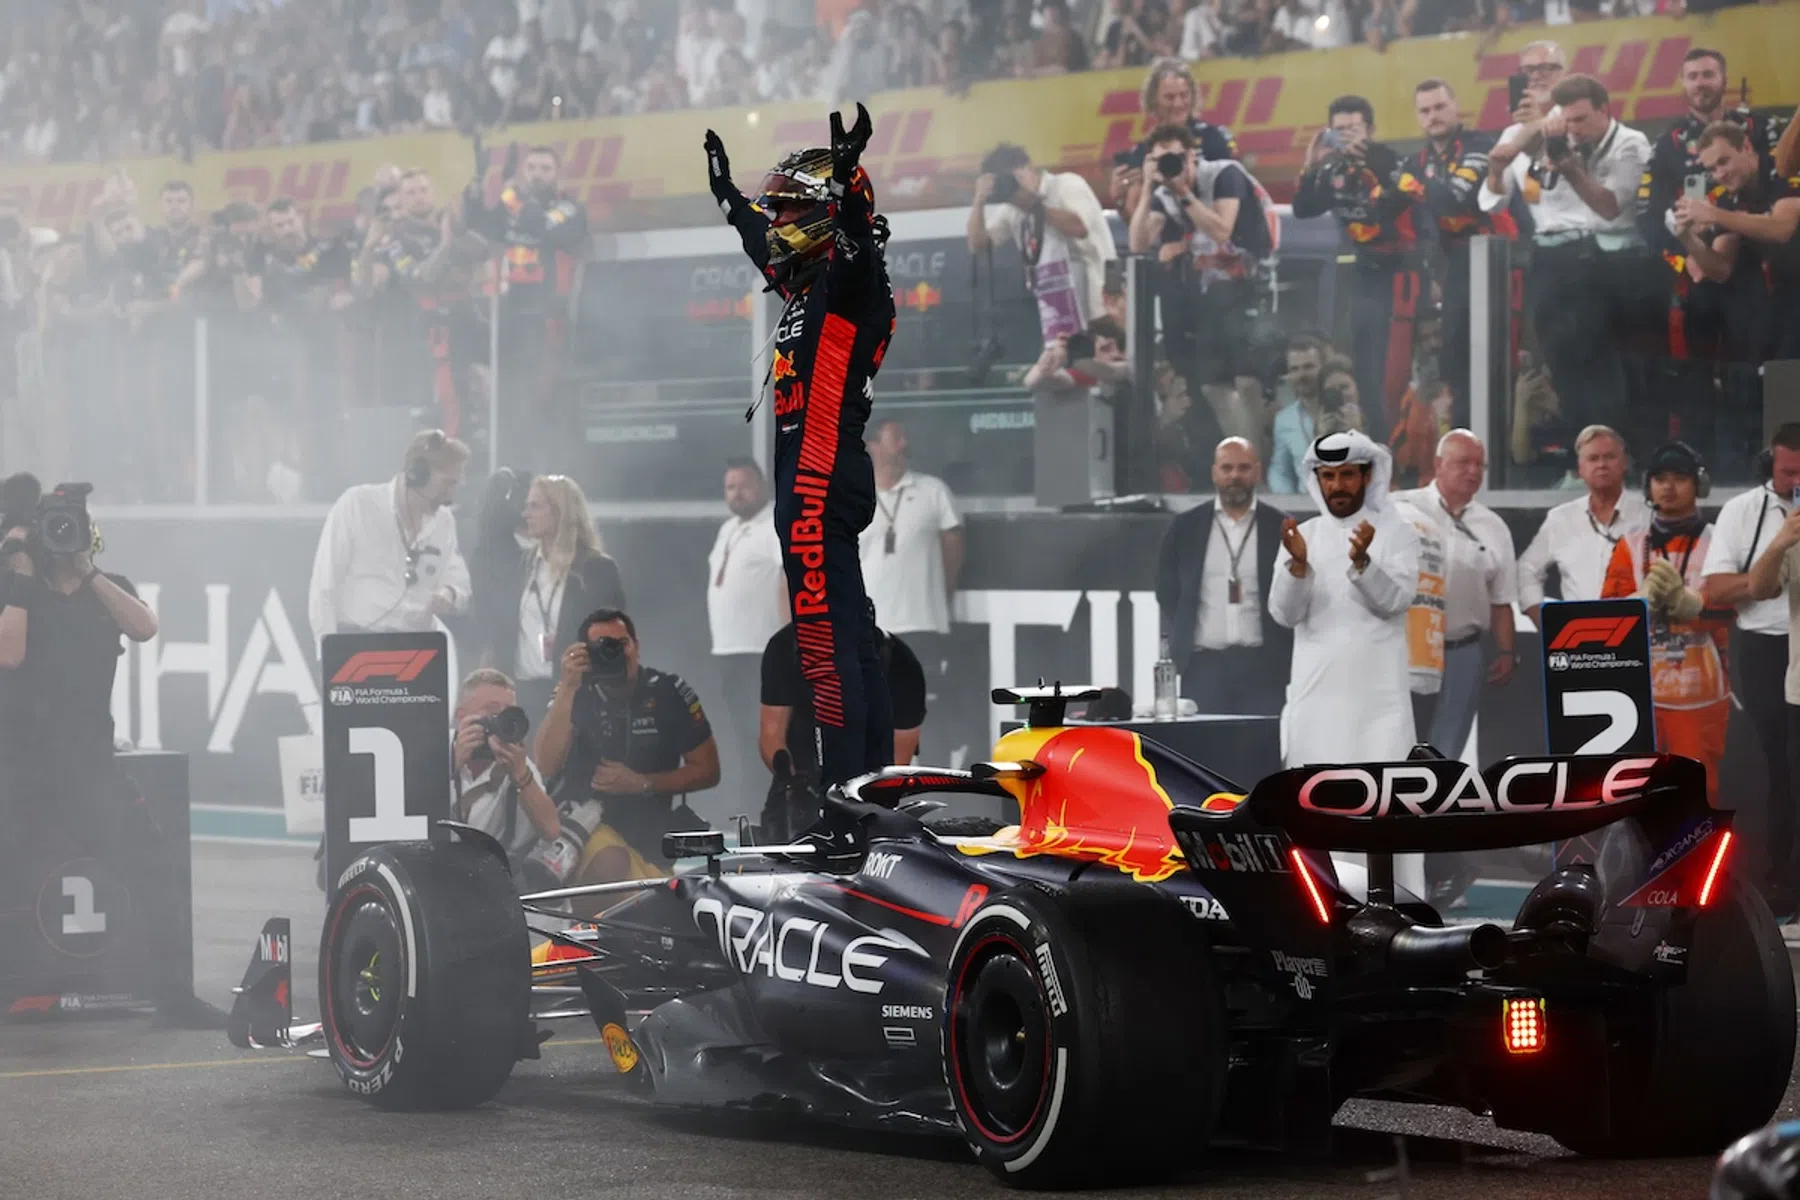 Verstappen's highlights in Spain